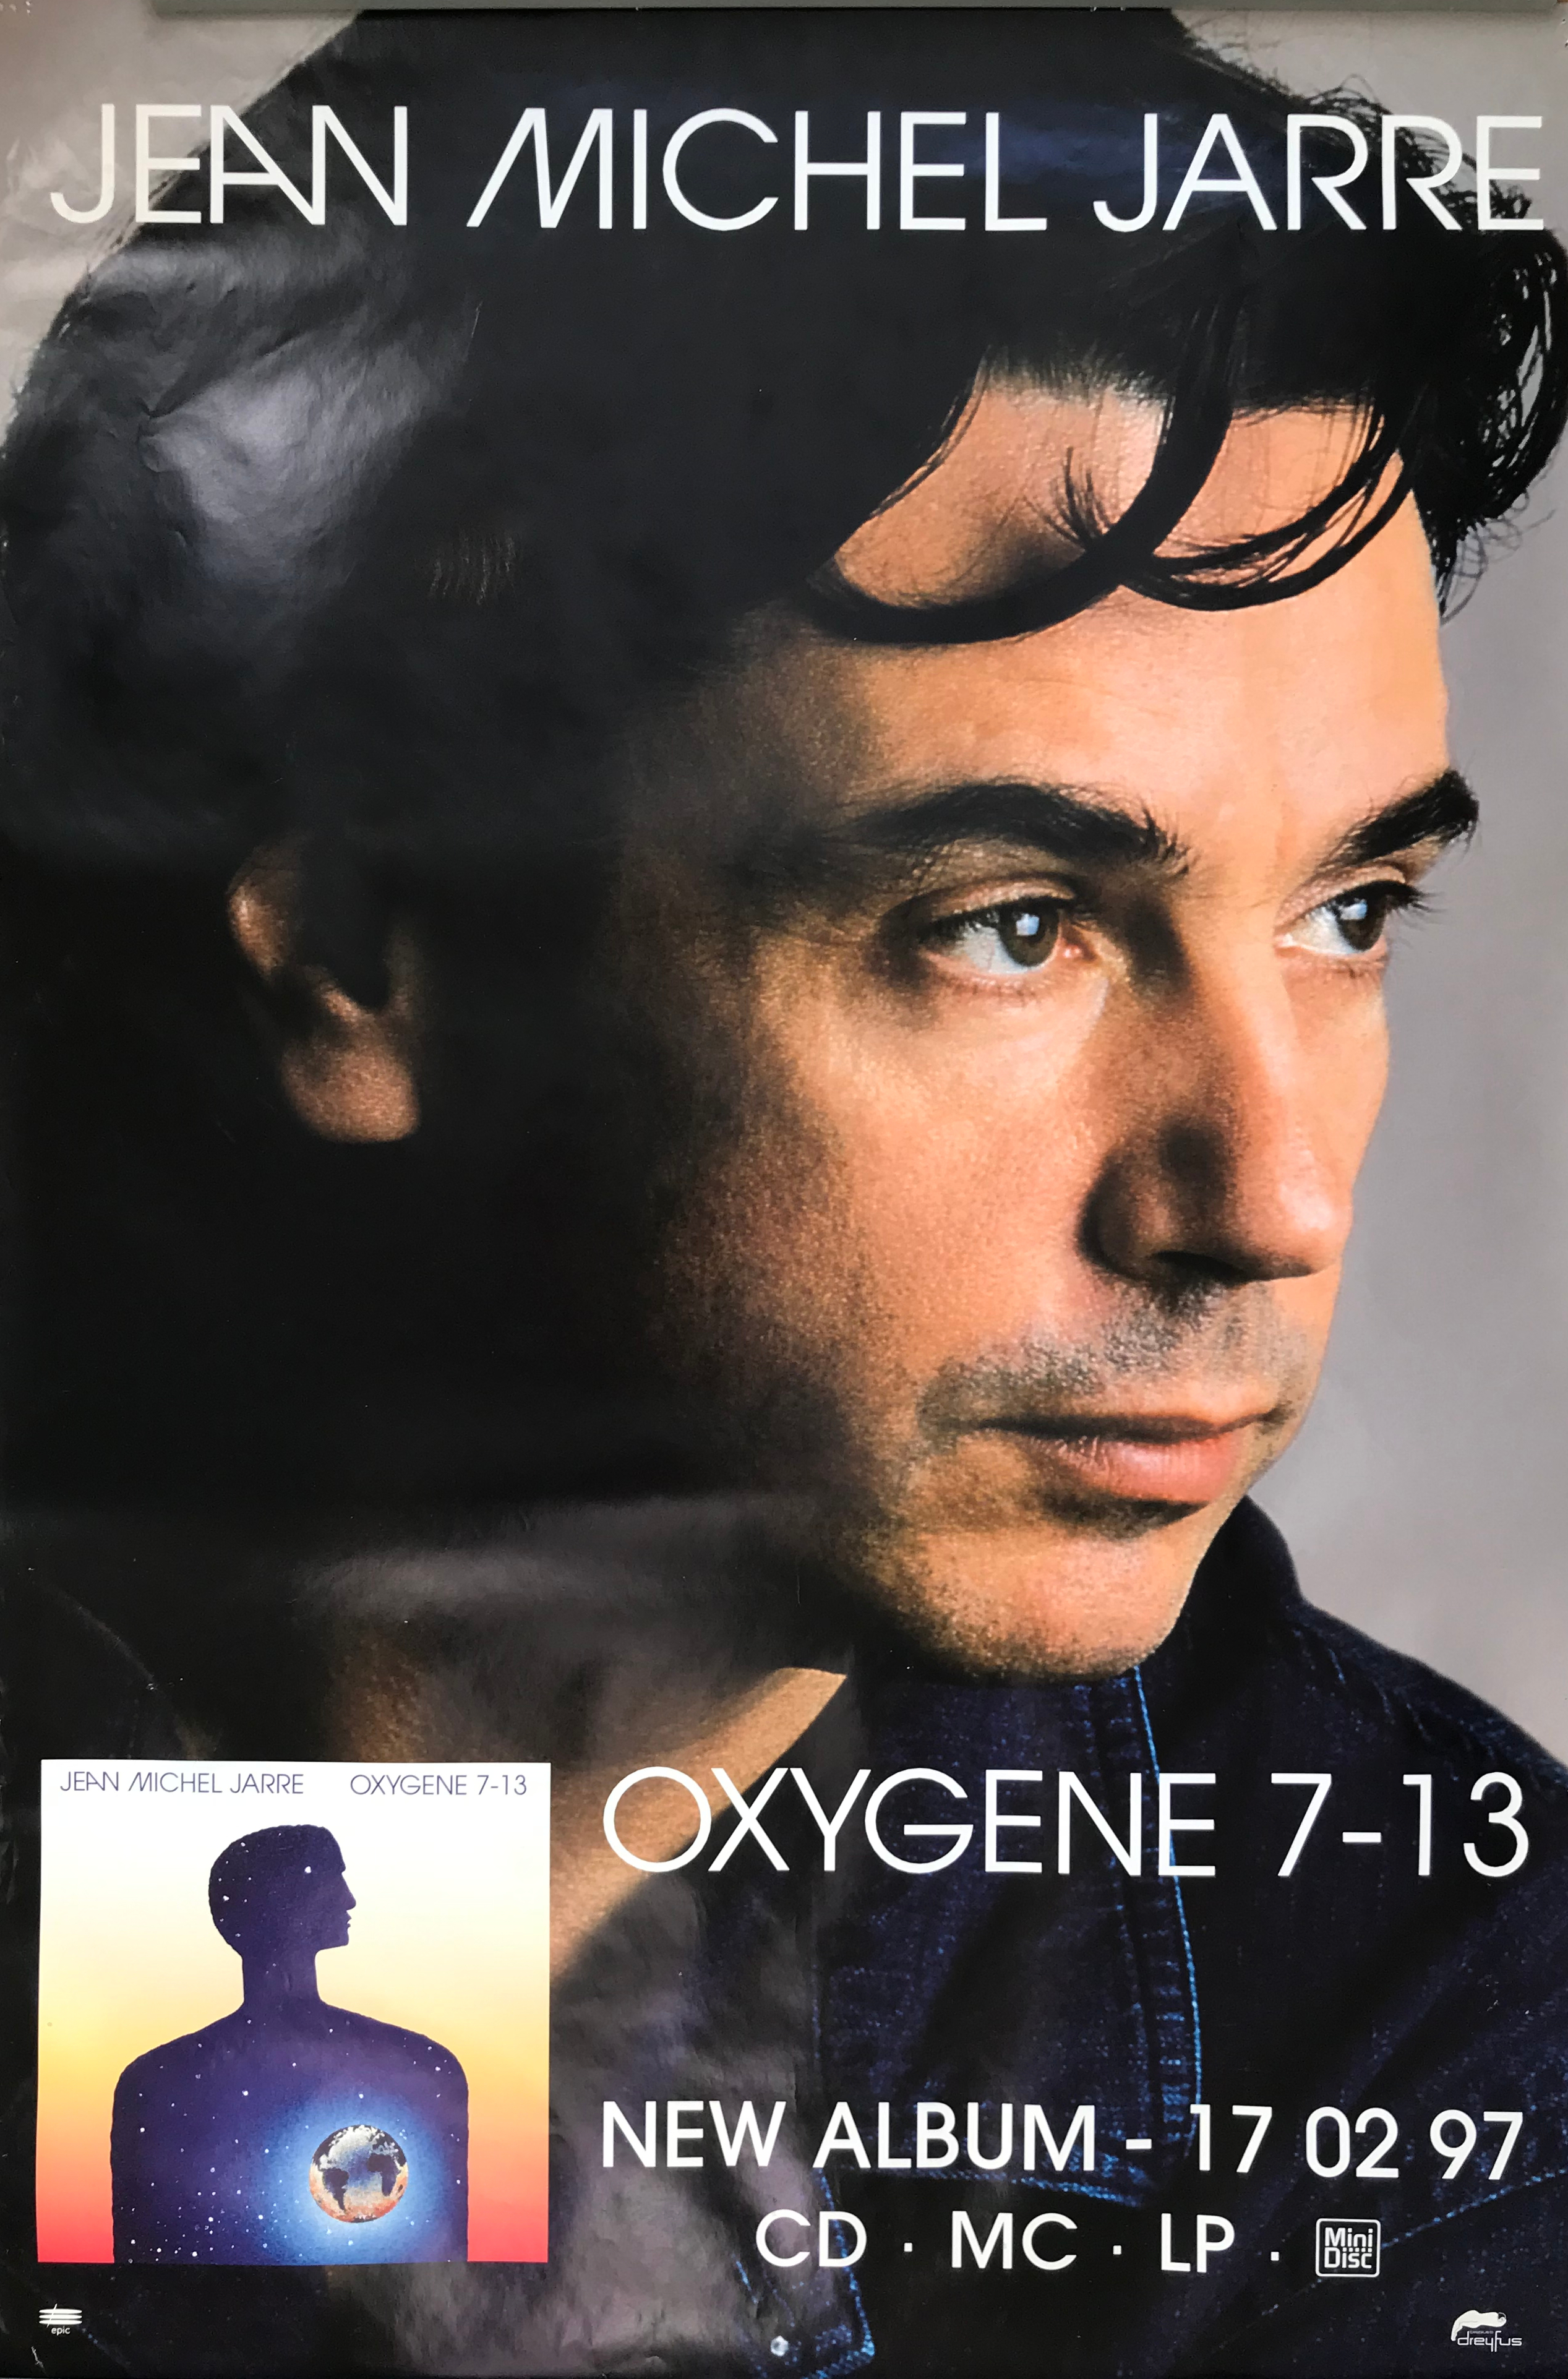 Oxygene 7 - 13